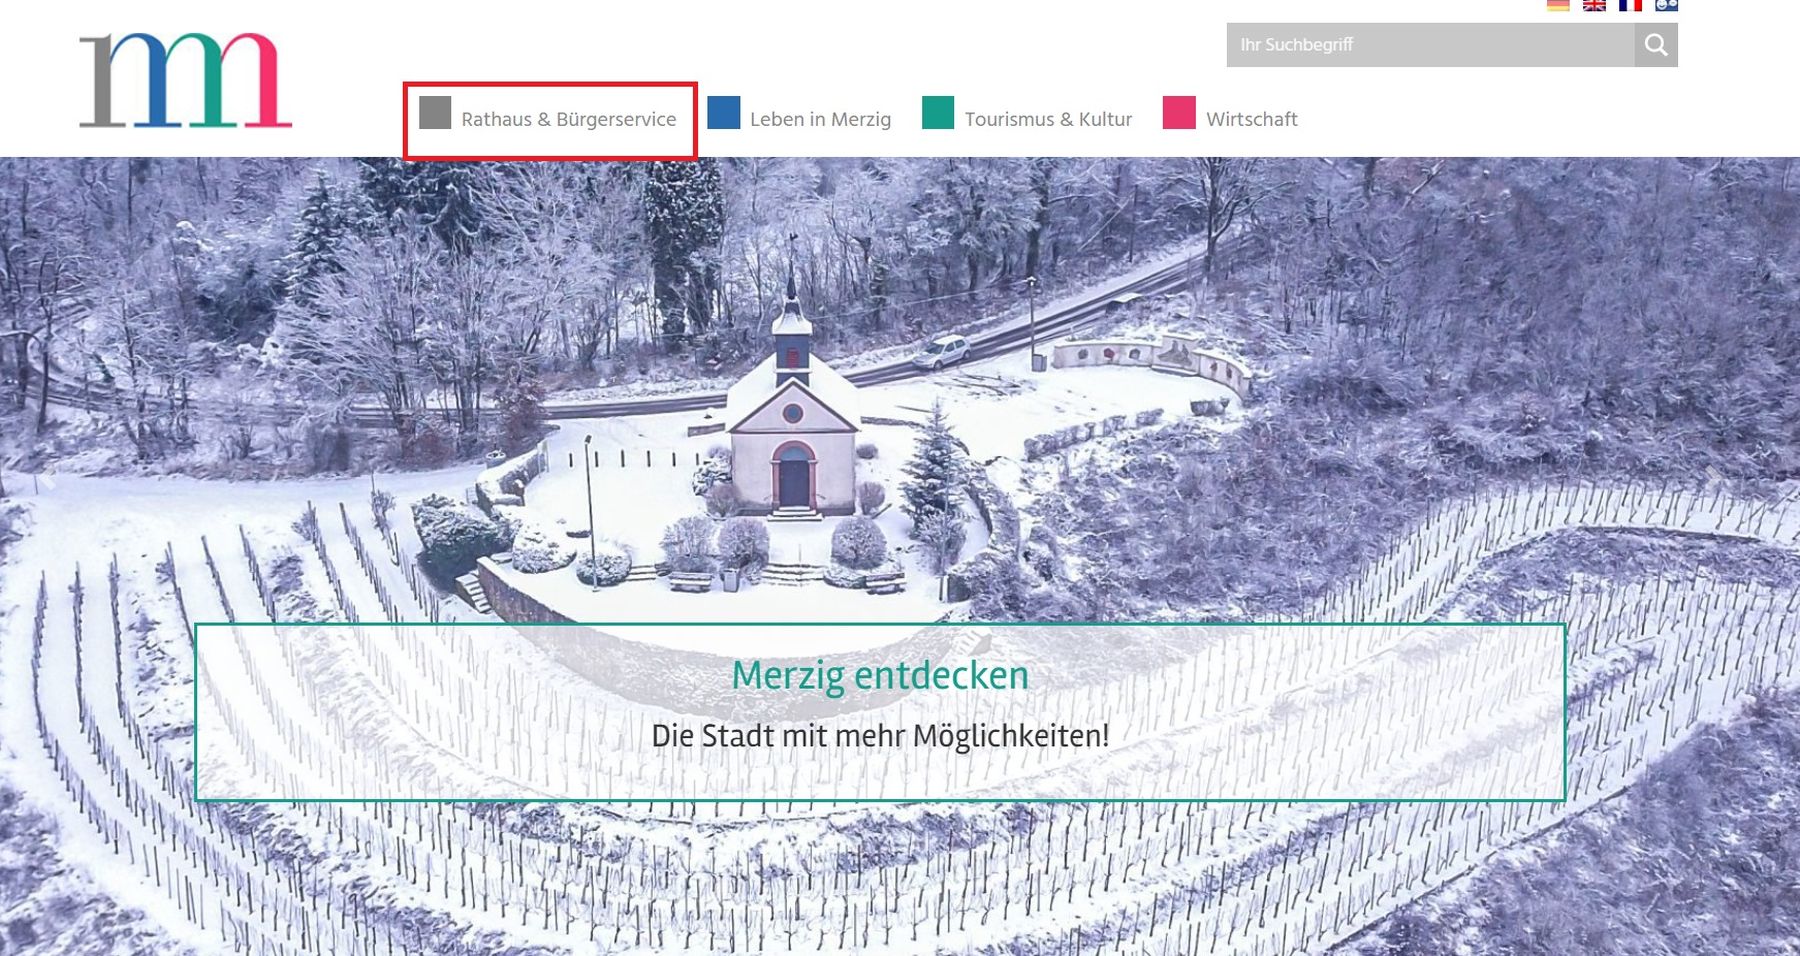 Das Bild zeigt die Startseite der städtischen Internetseite zur Erläuterung der Navigation in Leichter Sprache.